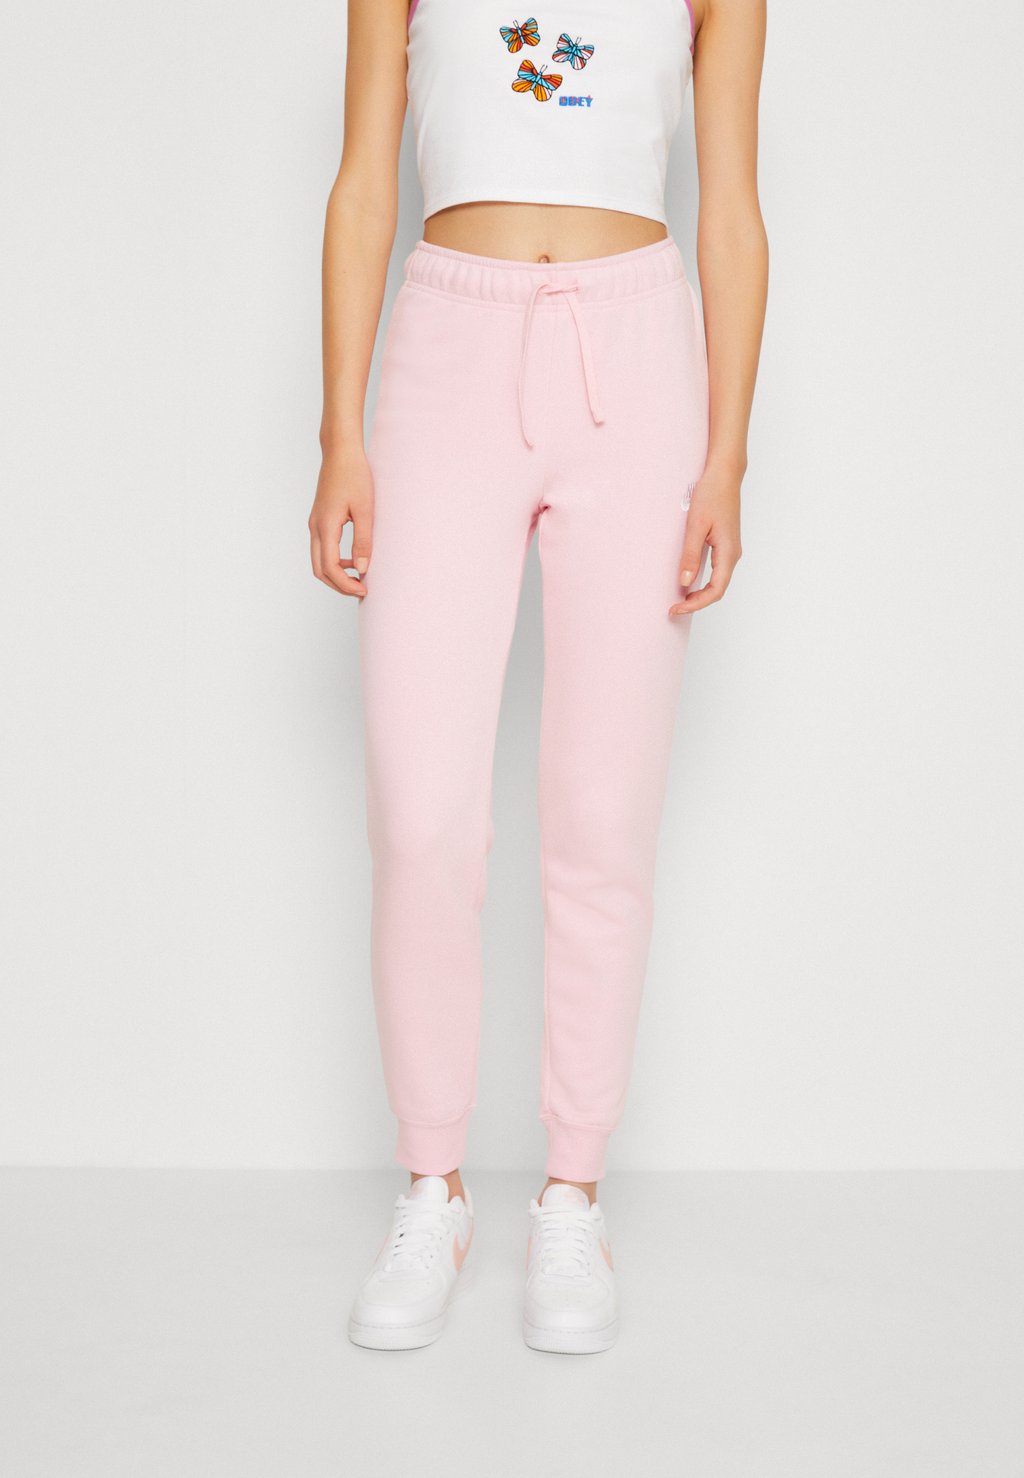 Спортивные брюки Nike Club Pant Tight, бледно-розовый